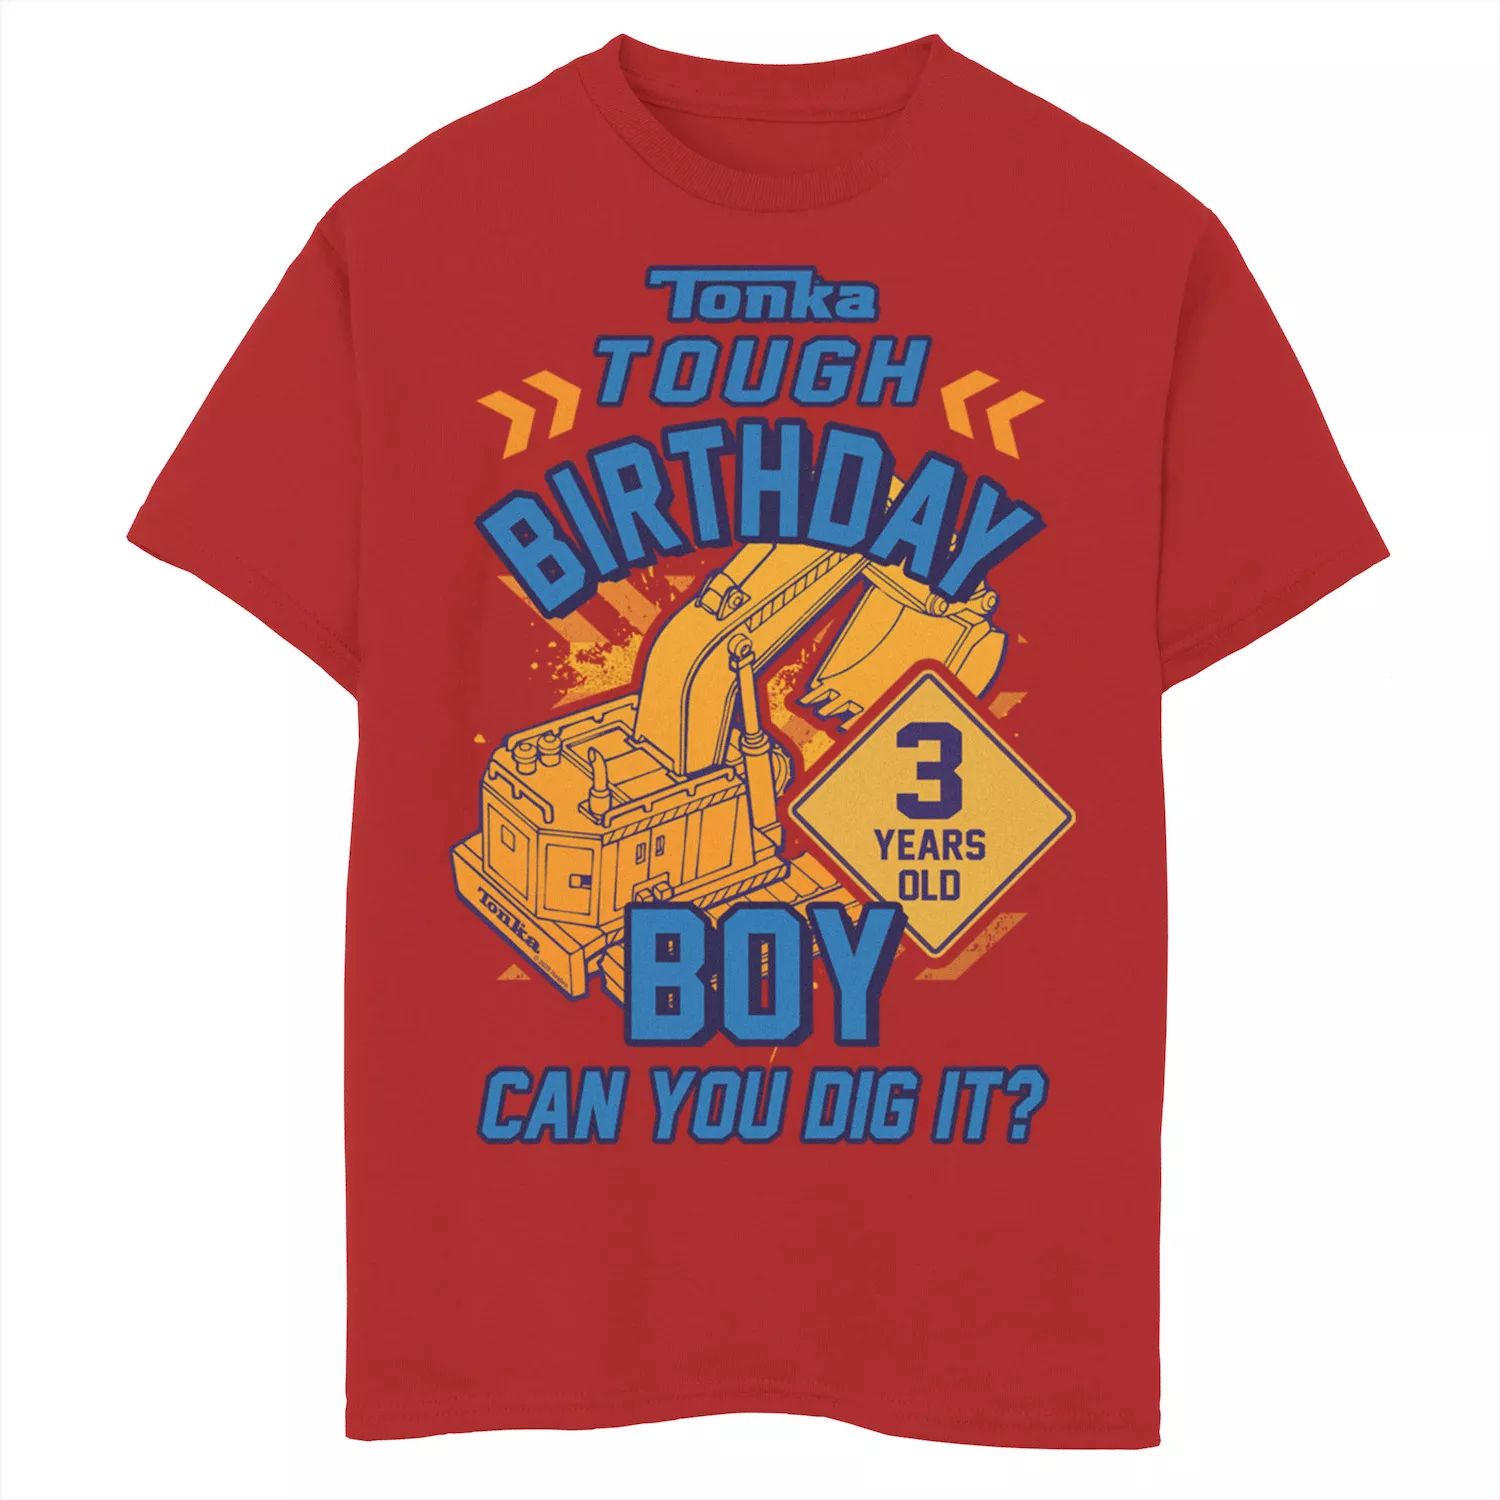 Футболка Tonka Tough для именинника 3 лет для мальчиков 8–20 лет с графическим рисунком Tonka